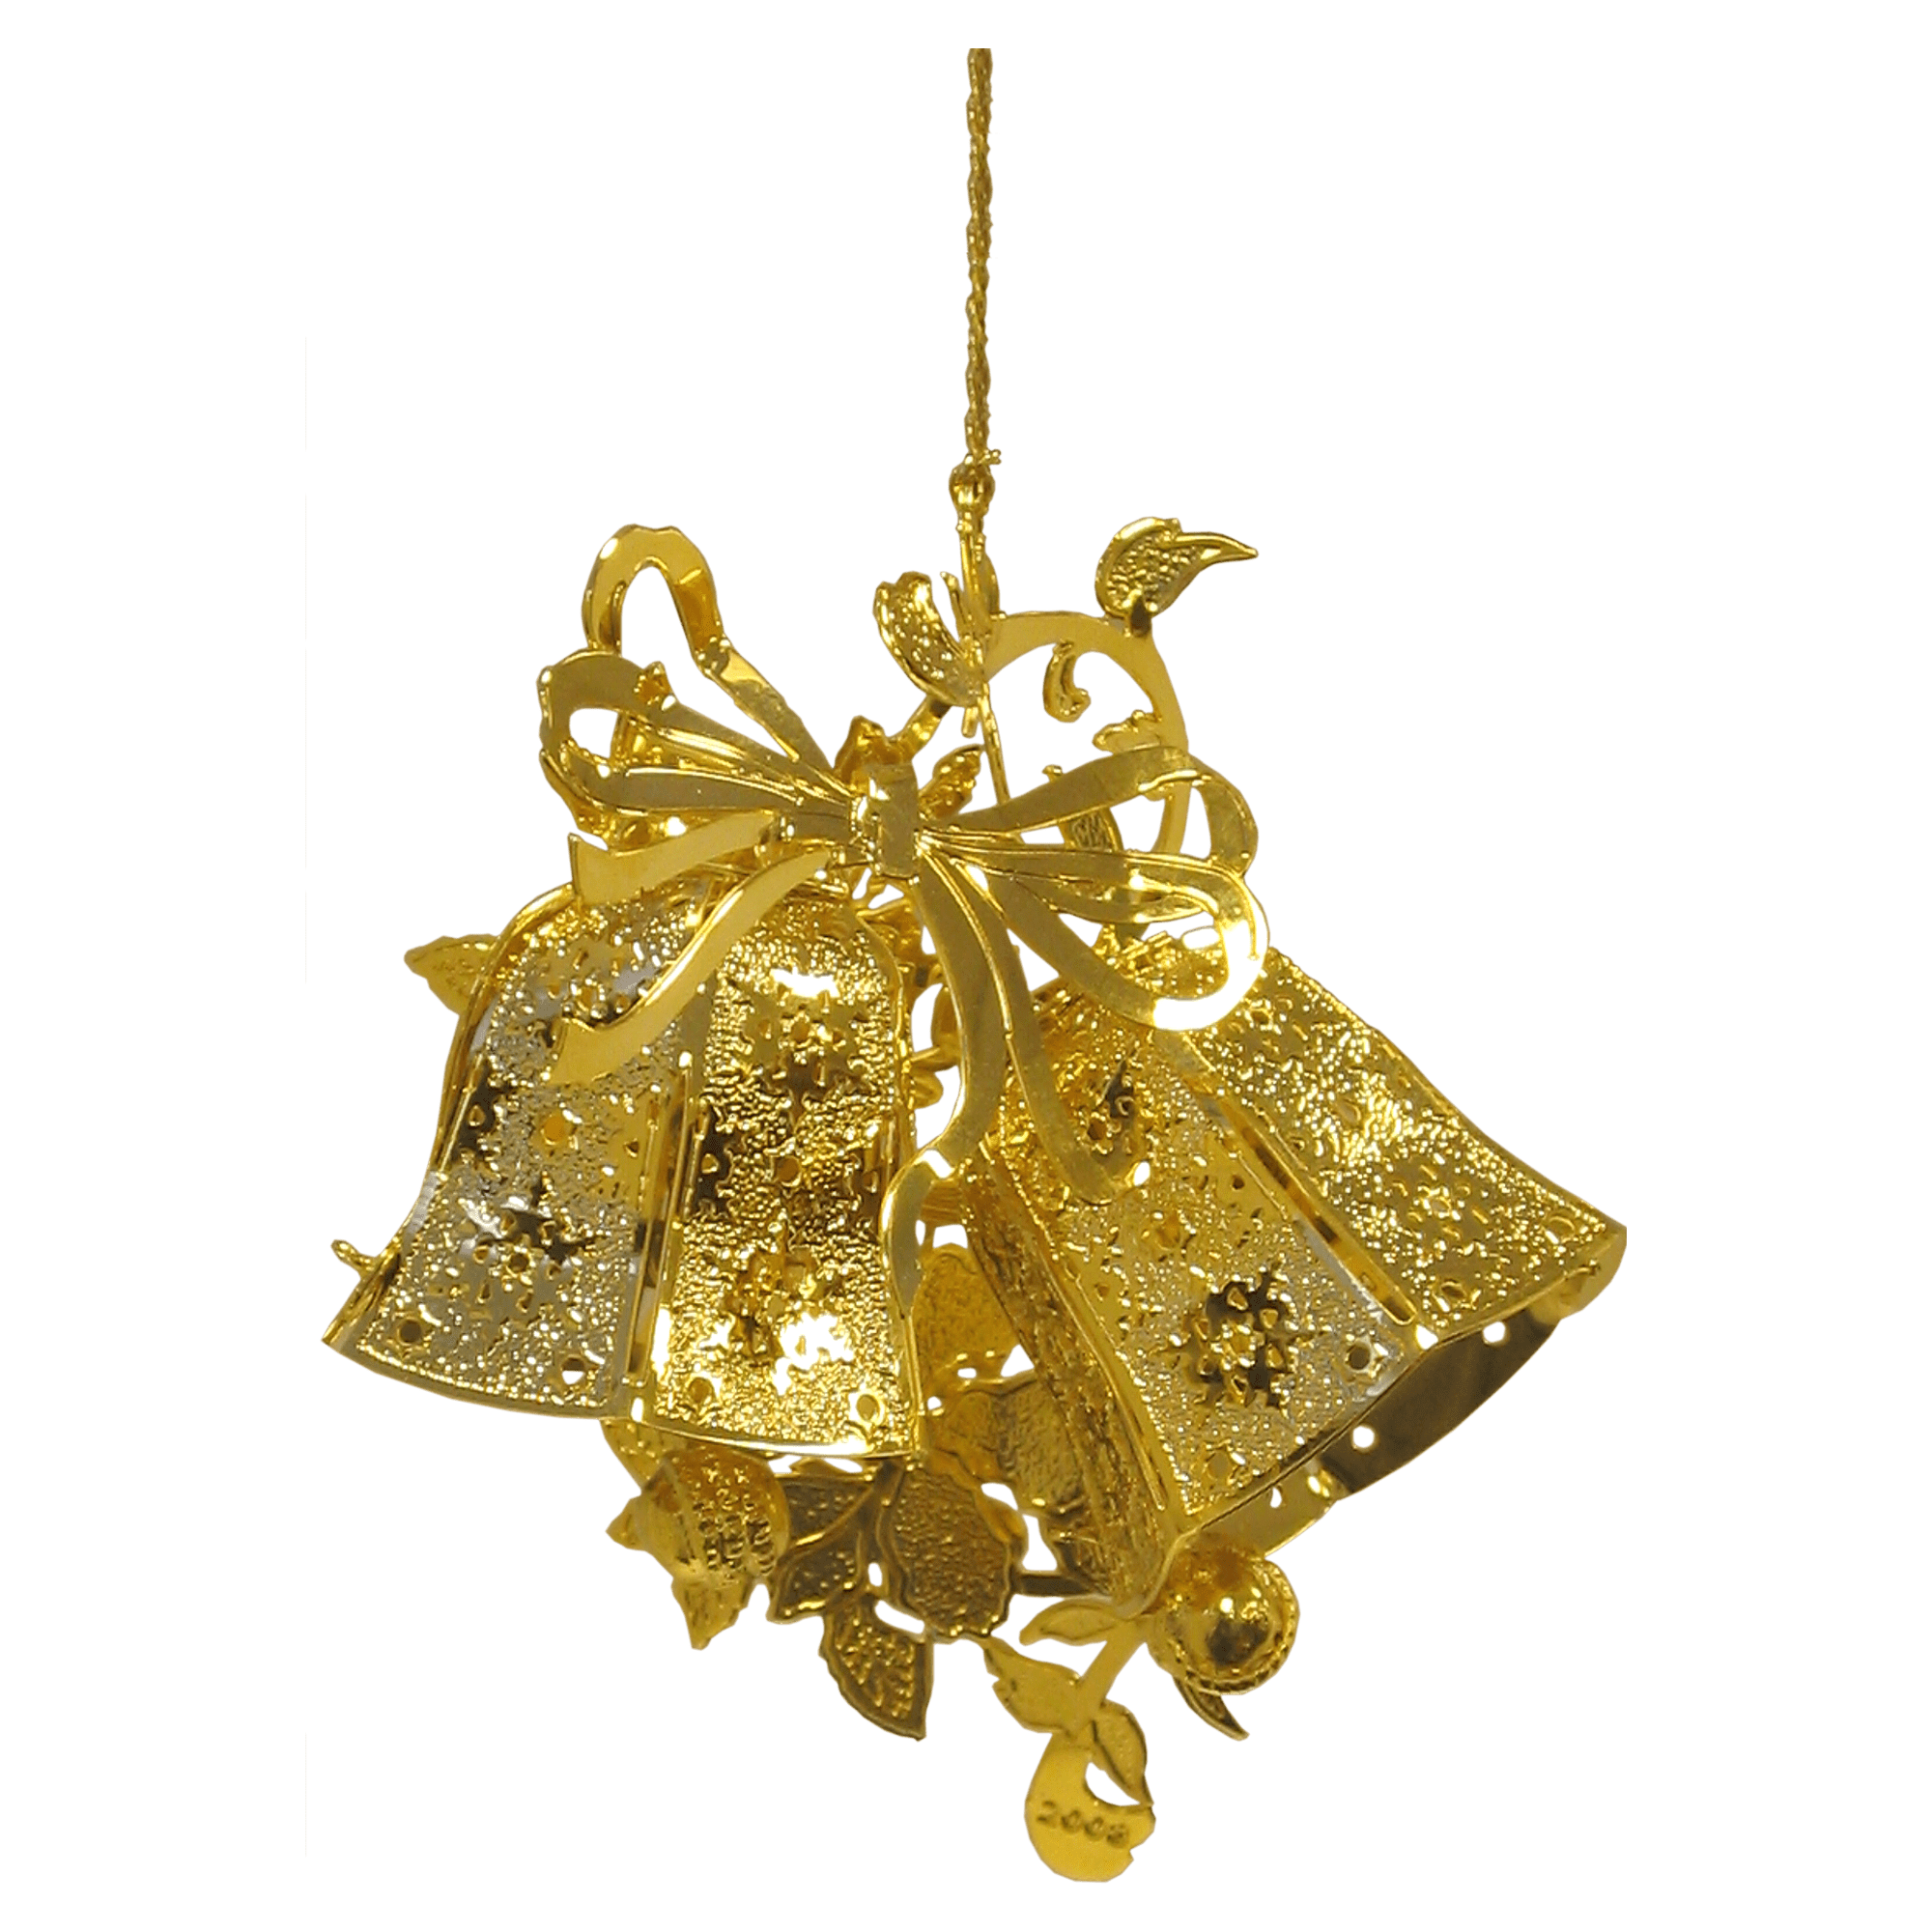 3D Gold Plated Brass Ornament (Bells)